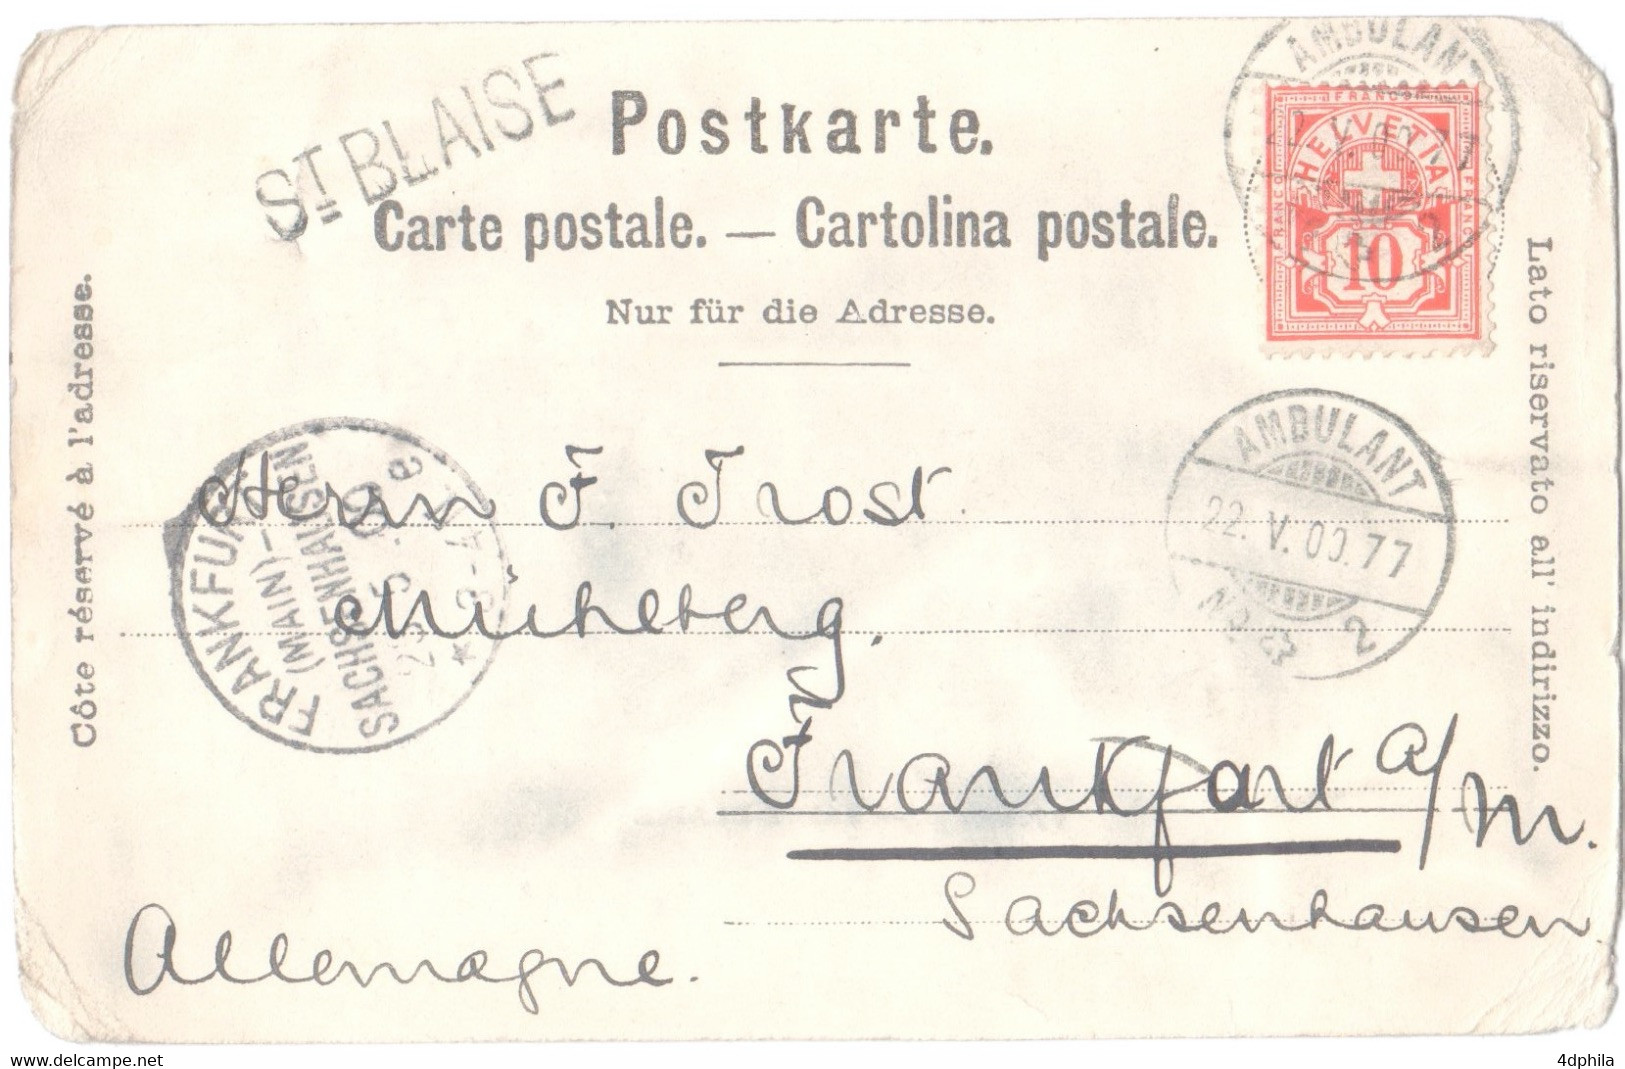 ST BLAISE 1900 - Stabstempel über AK - Oblitération Linéaire Sur CPA - Saint-Blaise